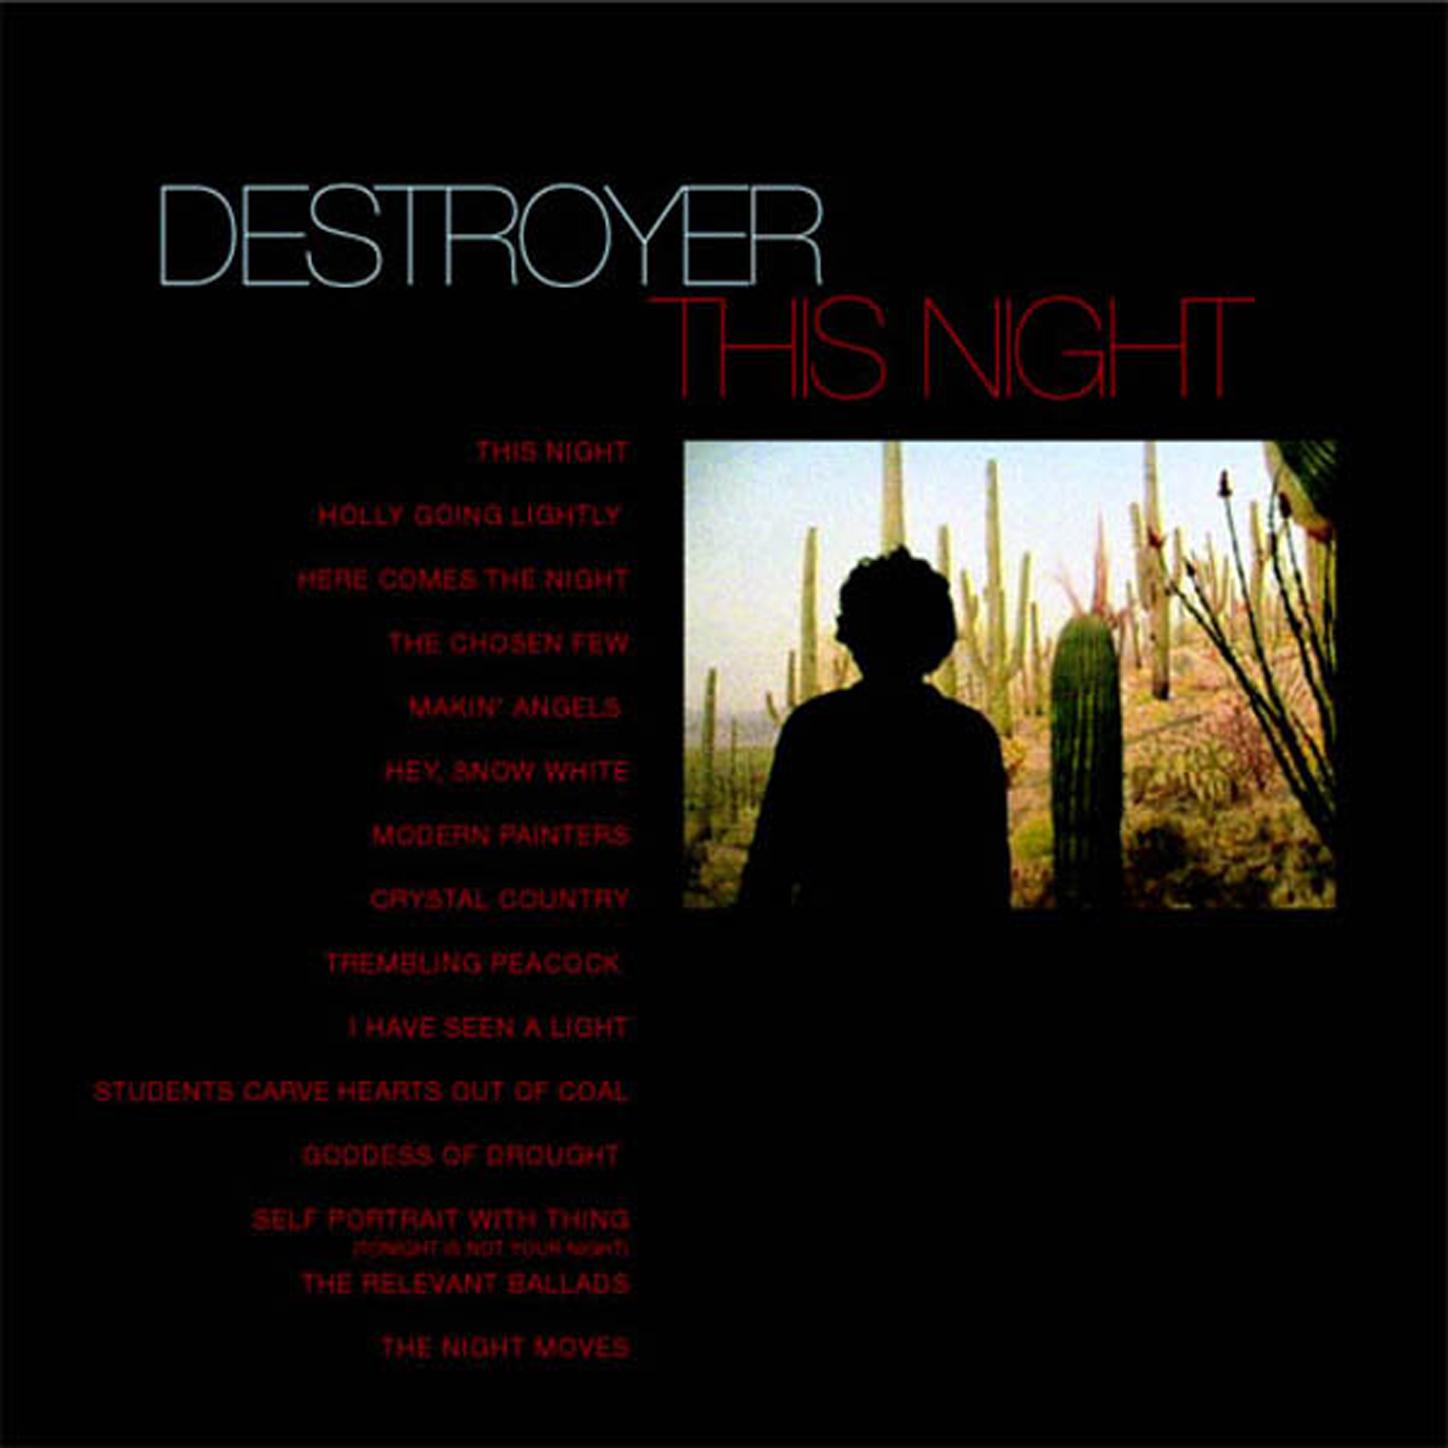 Destroyer - The Relevant Ballads